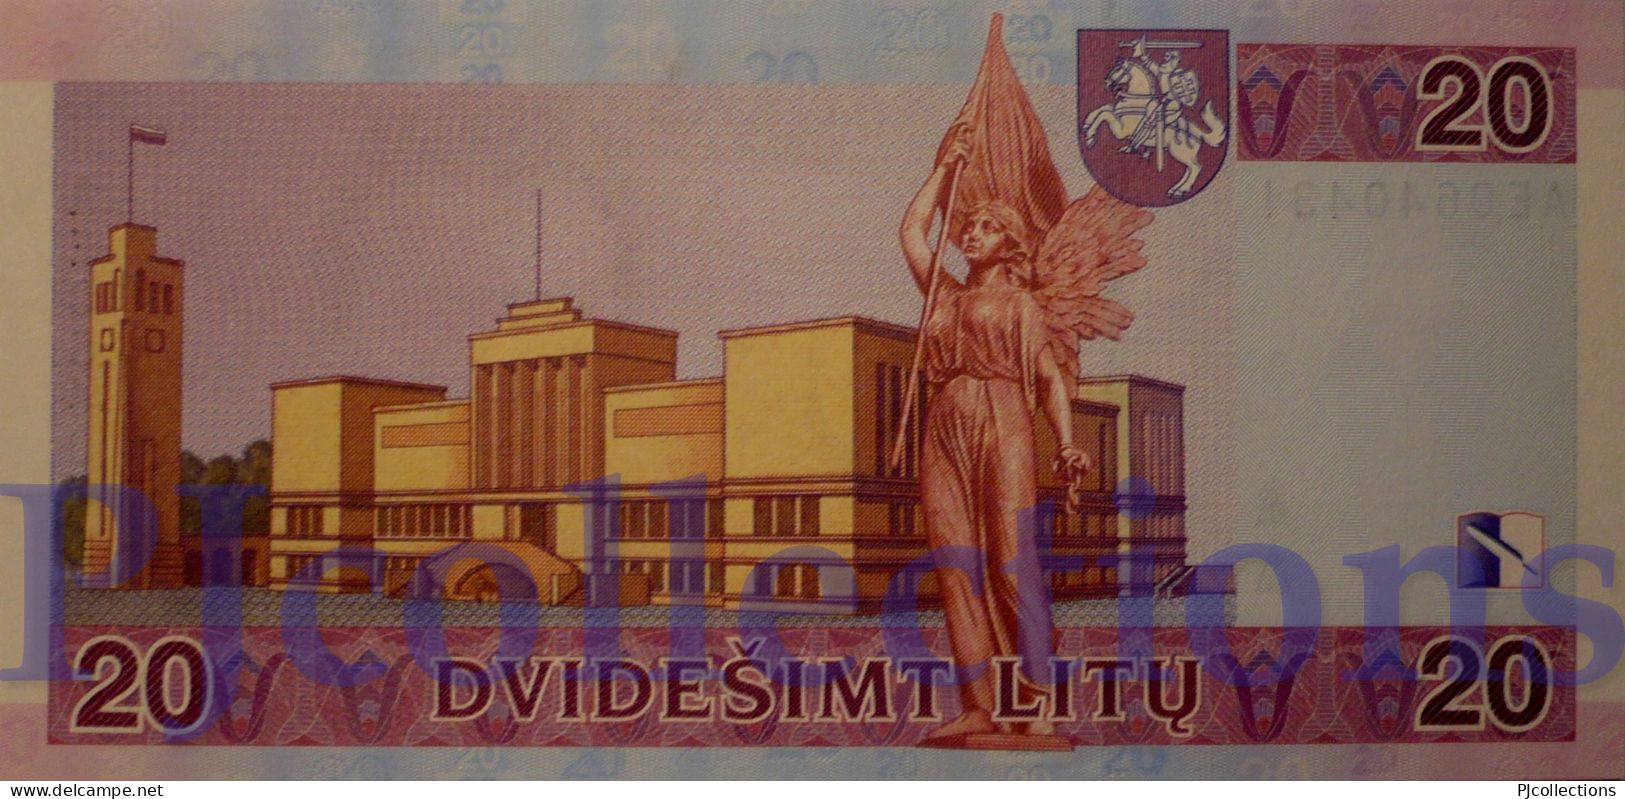 LITHUANIA 20 LITU 2001 PICK 66 UNC - Litauen